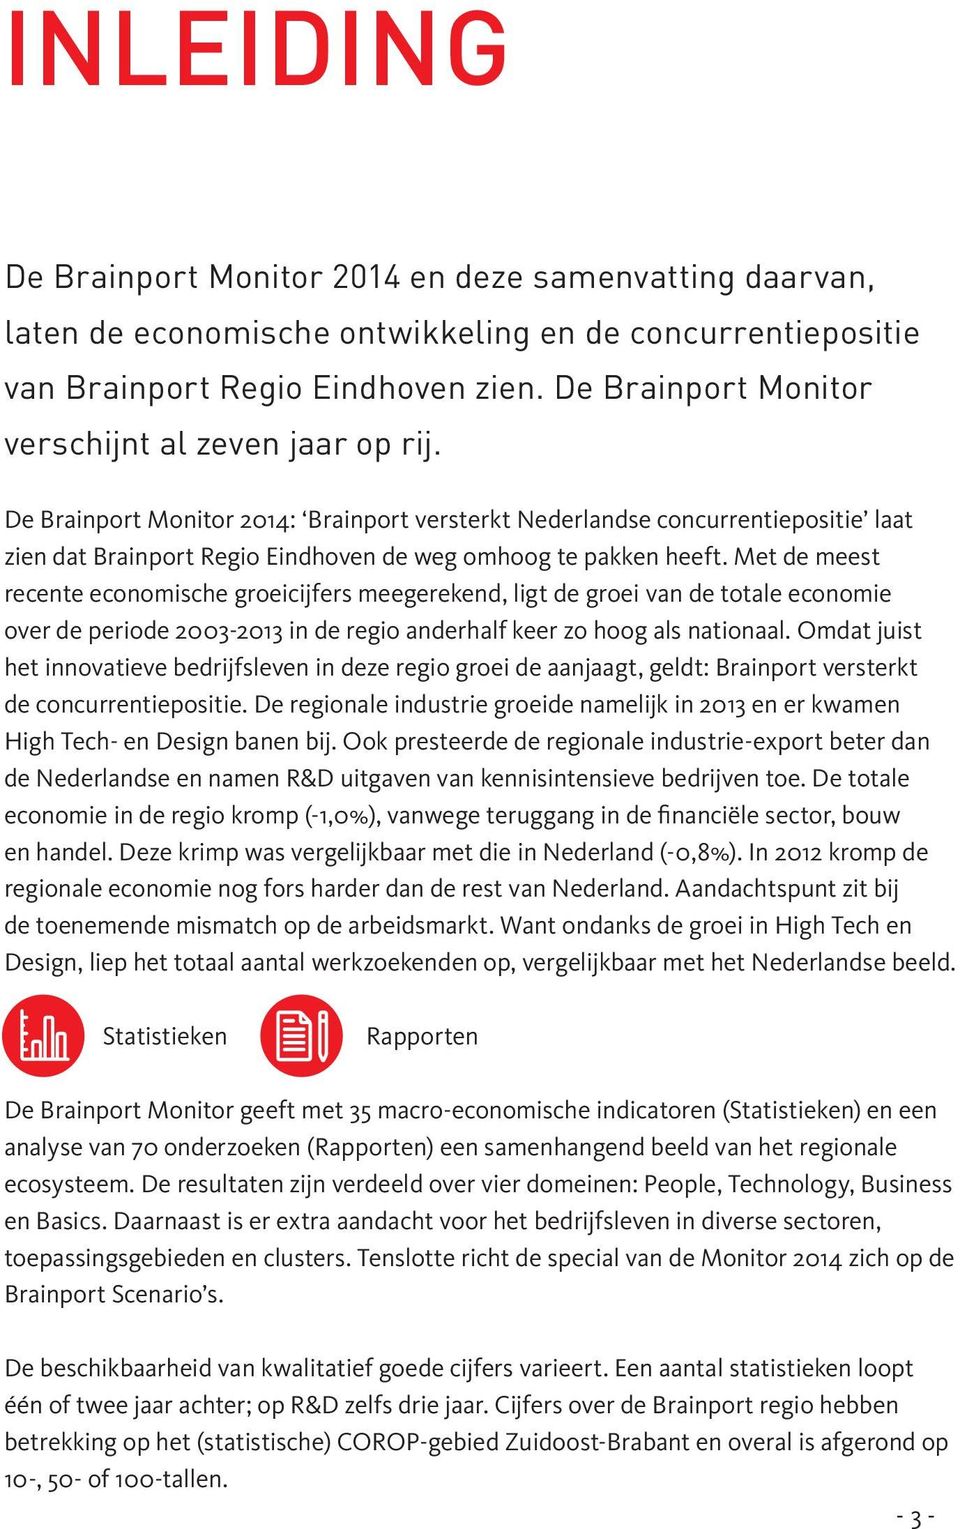 De Brainport Monitor 2014: Brainport versterkt Nederlandse concurrentiepositie laat zien dat Brainport Regio Eindhoven de weg omhoog te pakken heeft.